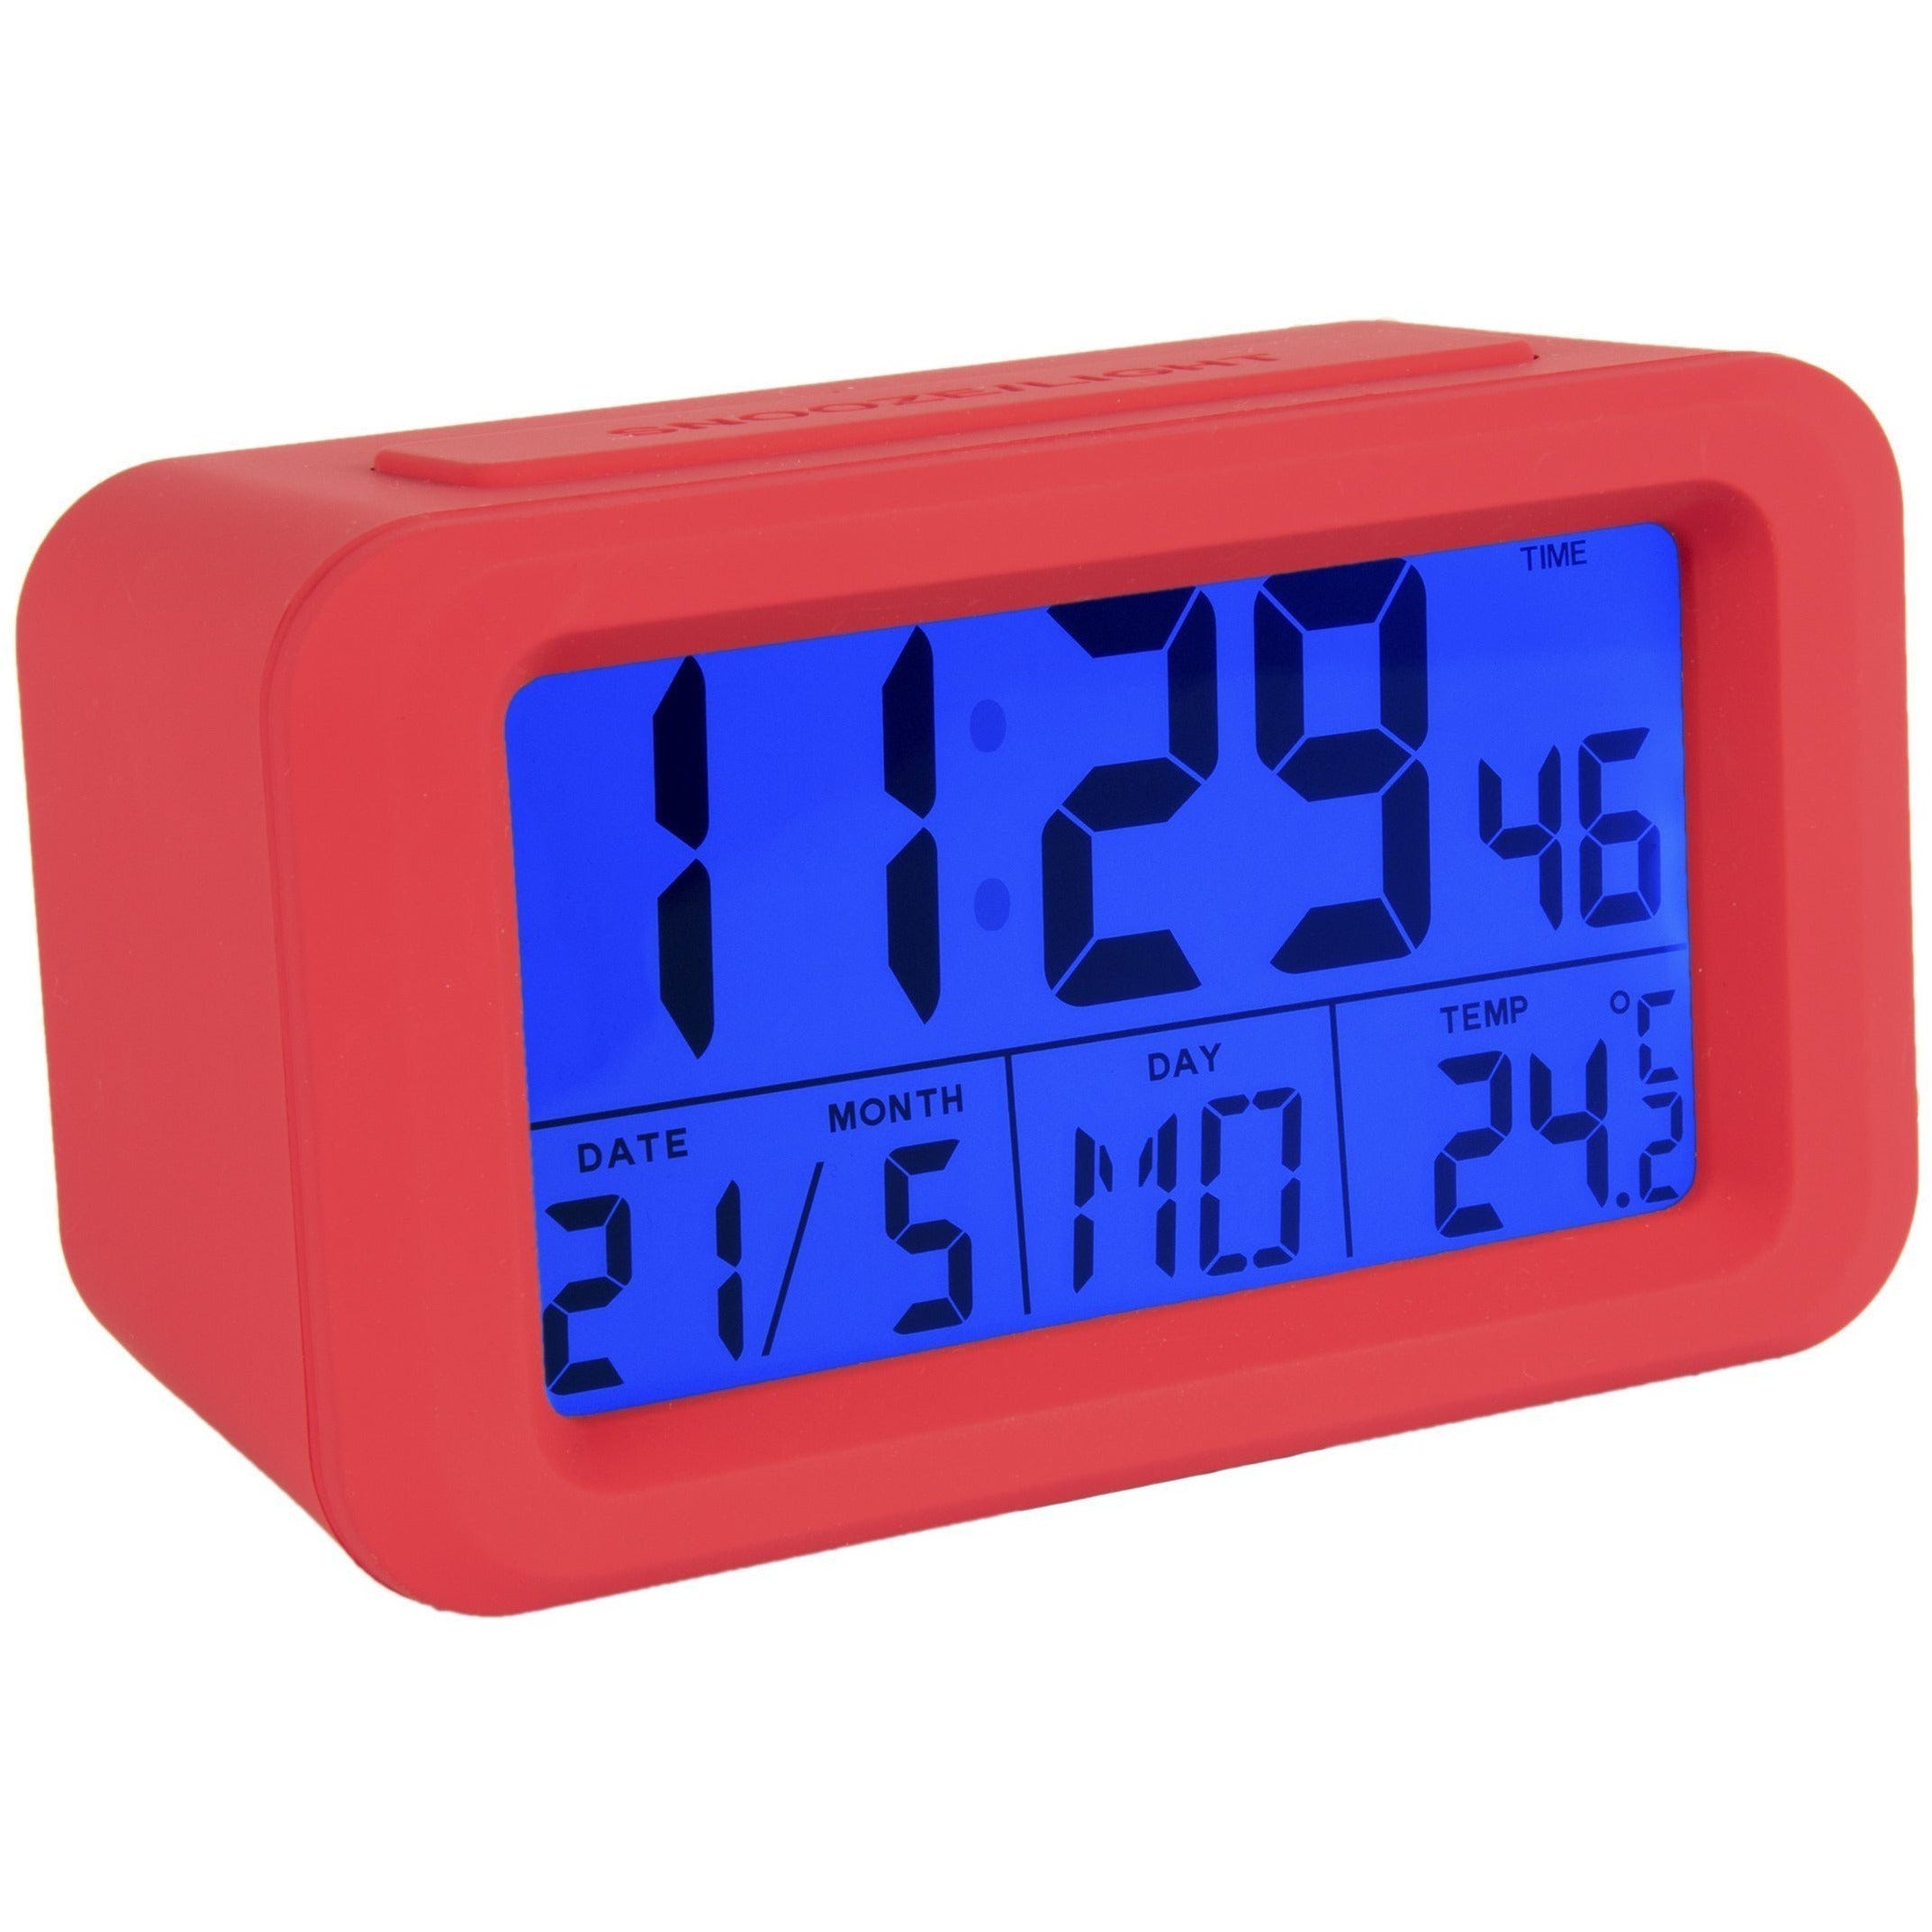 Fisura – Reloj despertador digital rojo con LED. Reloj indicador